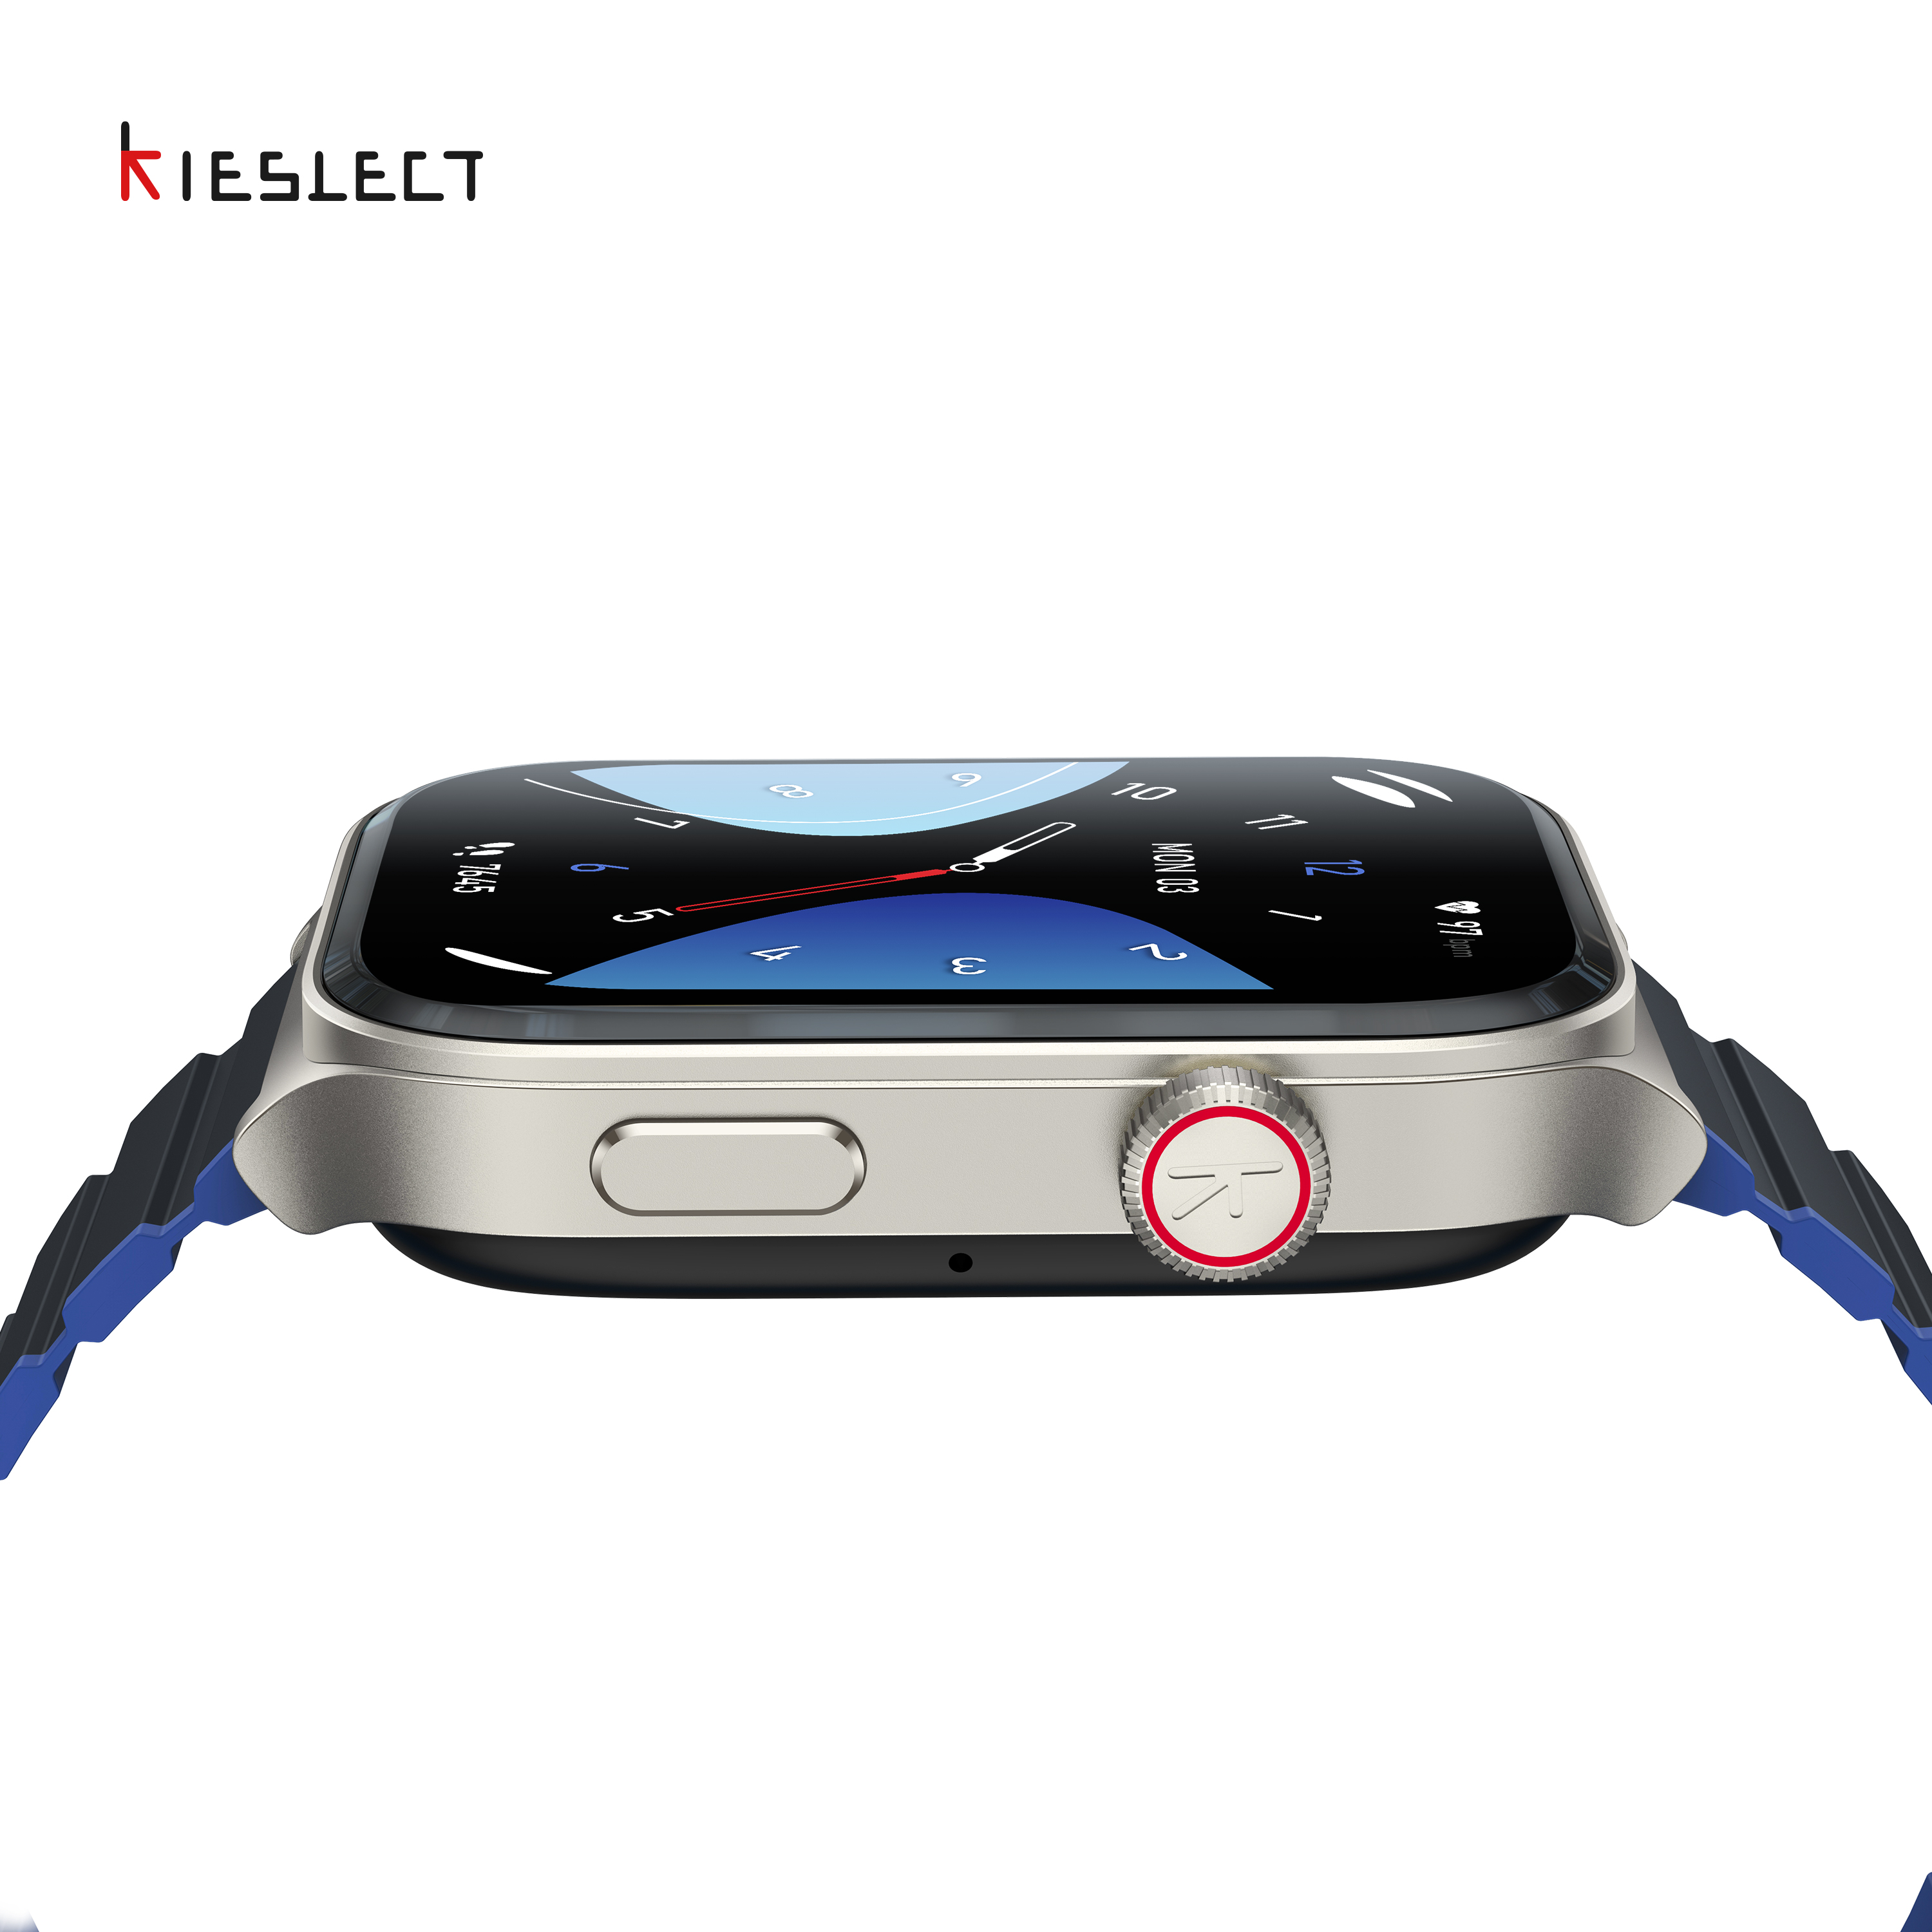 (Mở bán) Đồng hồ thông minh Kieslect KS 2 | 2.01inch | Ultra AMOLED | 300mAh | Nghe gọi trực tiếp |Hàng Chính Hãng